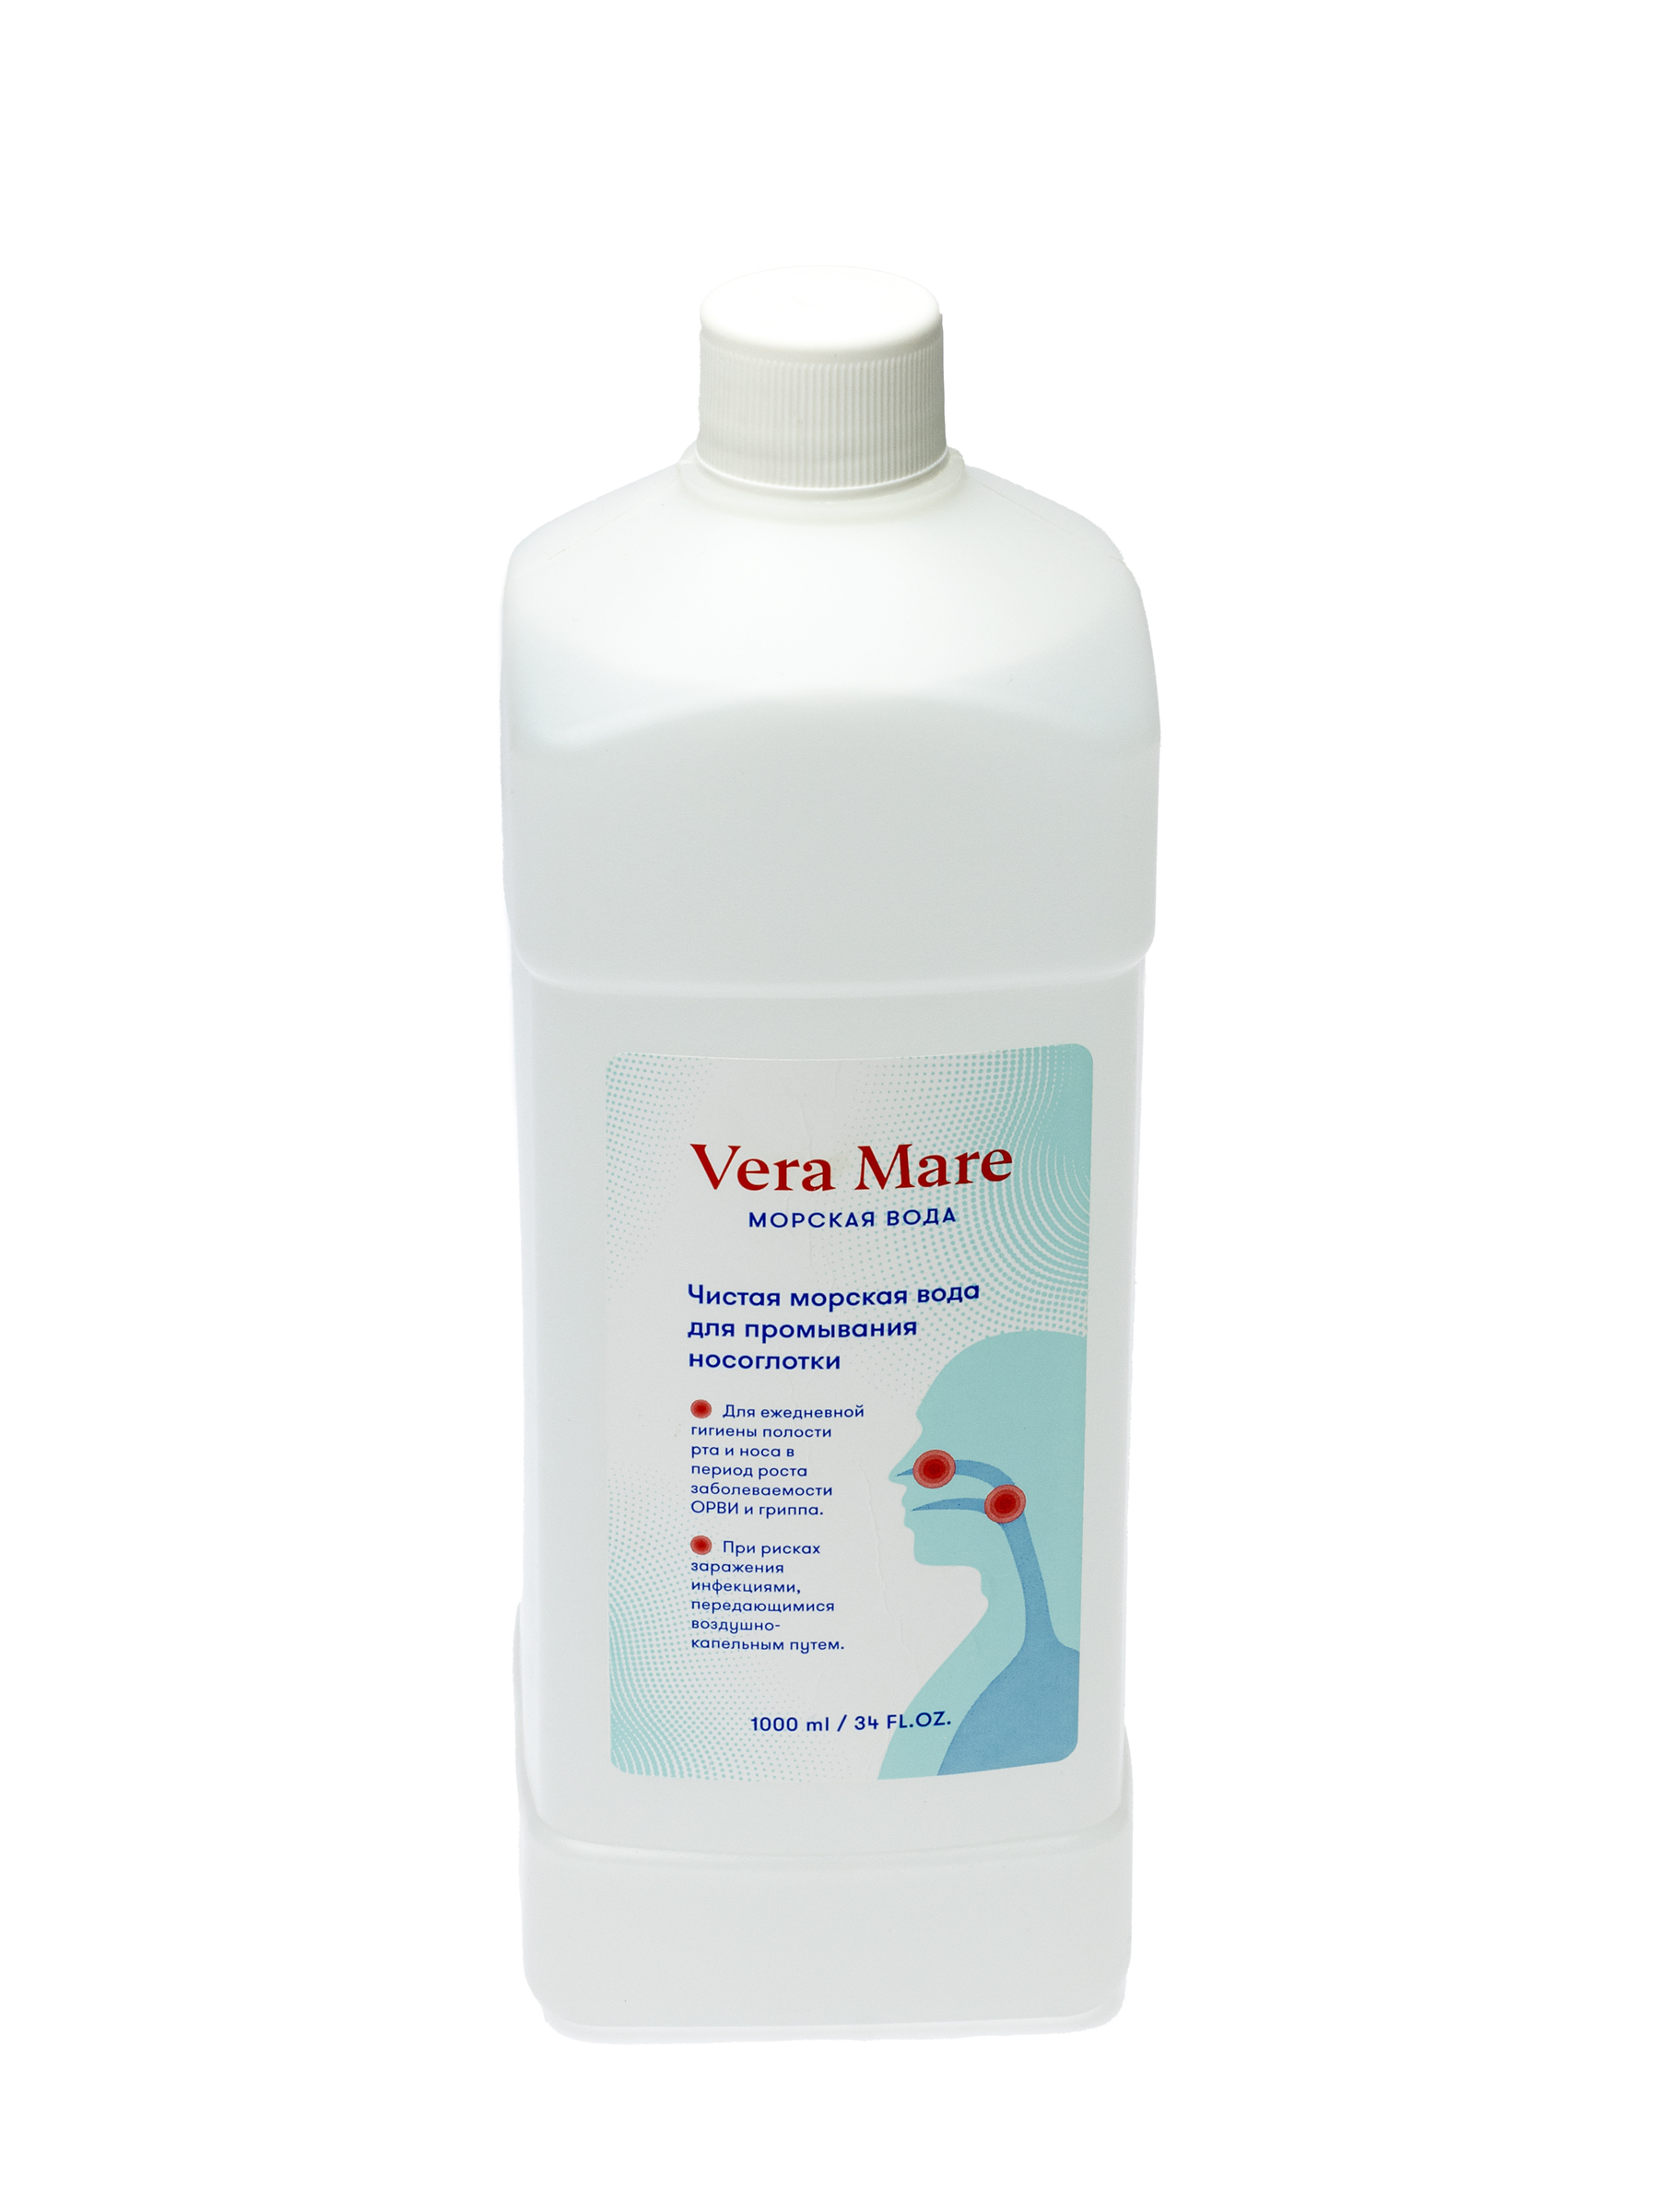 Морская вода Vera Маге для полости рта и носа — купить в интернет-аптеке  OZON. Инструкции, показания, состав, способ применения